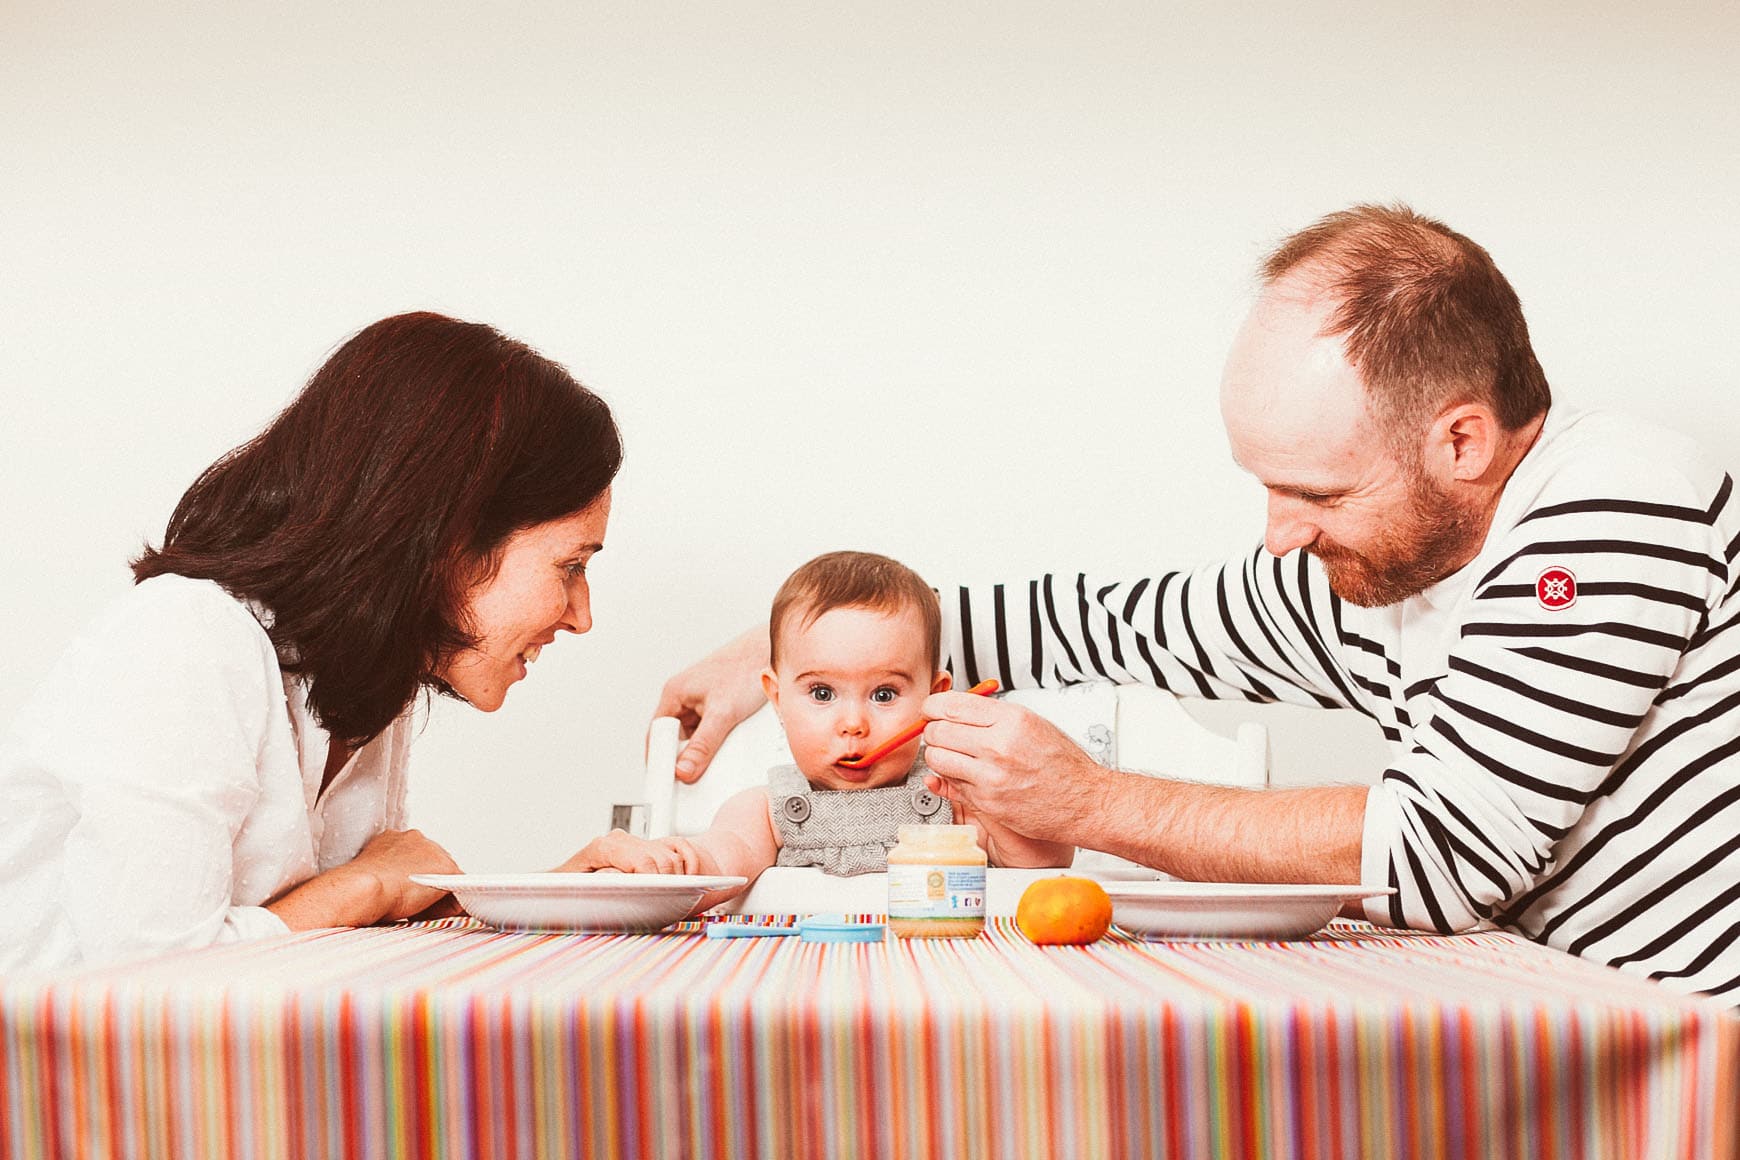 sesion de fotos infantil en casa con padres dando de comer